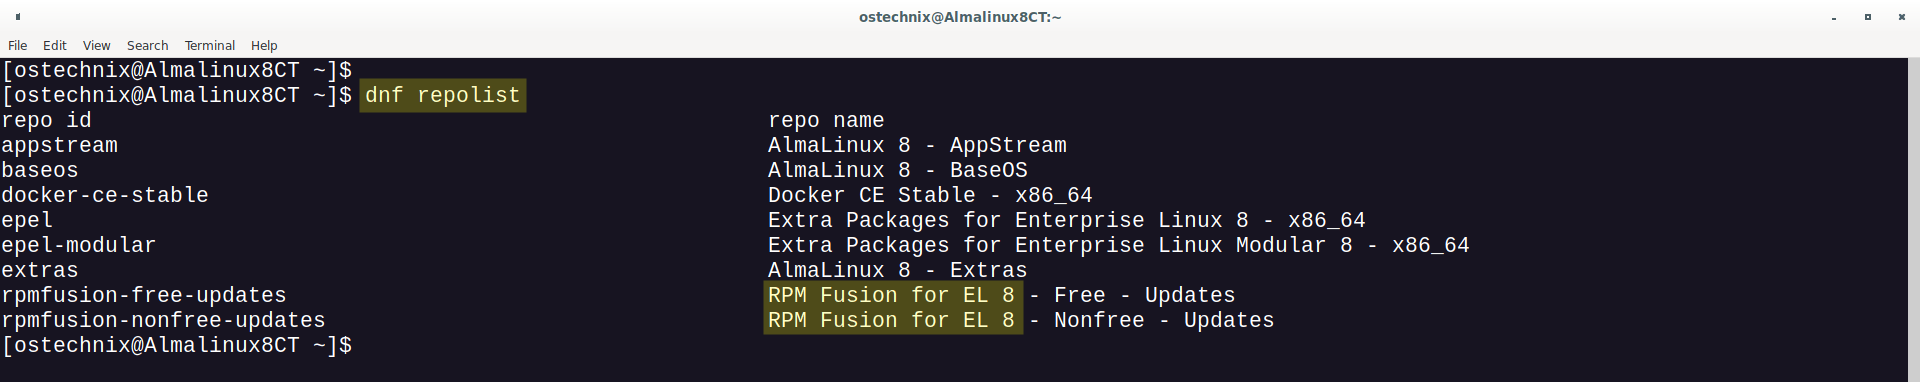 Lista de repositorios instalados en RHEL, CentOS, AlmaLinux, Rocky Linux